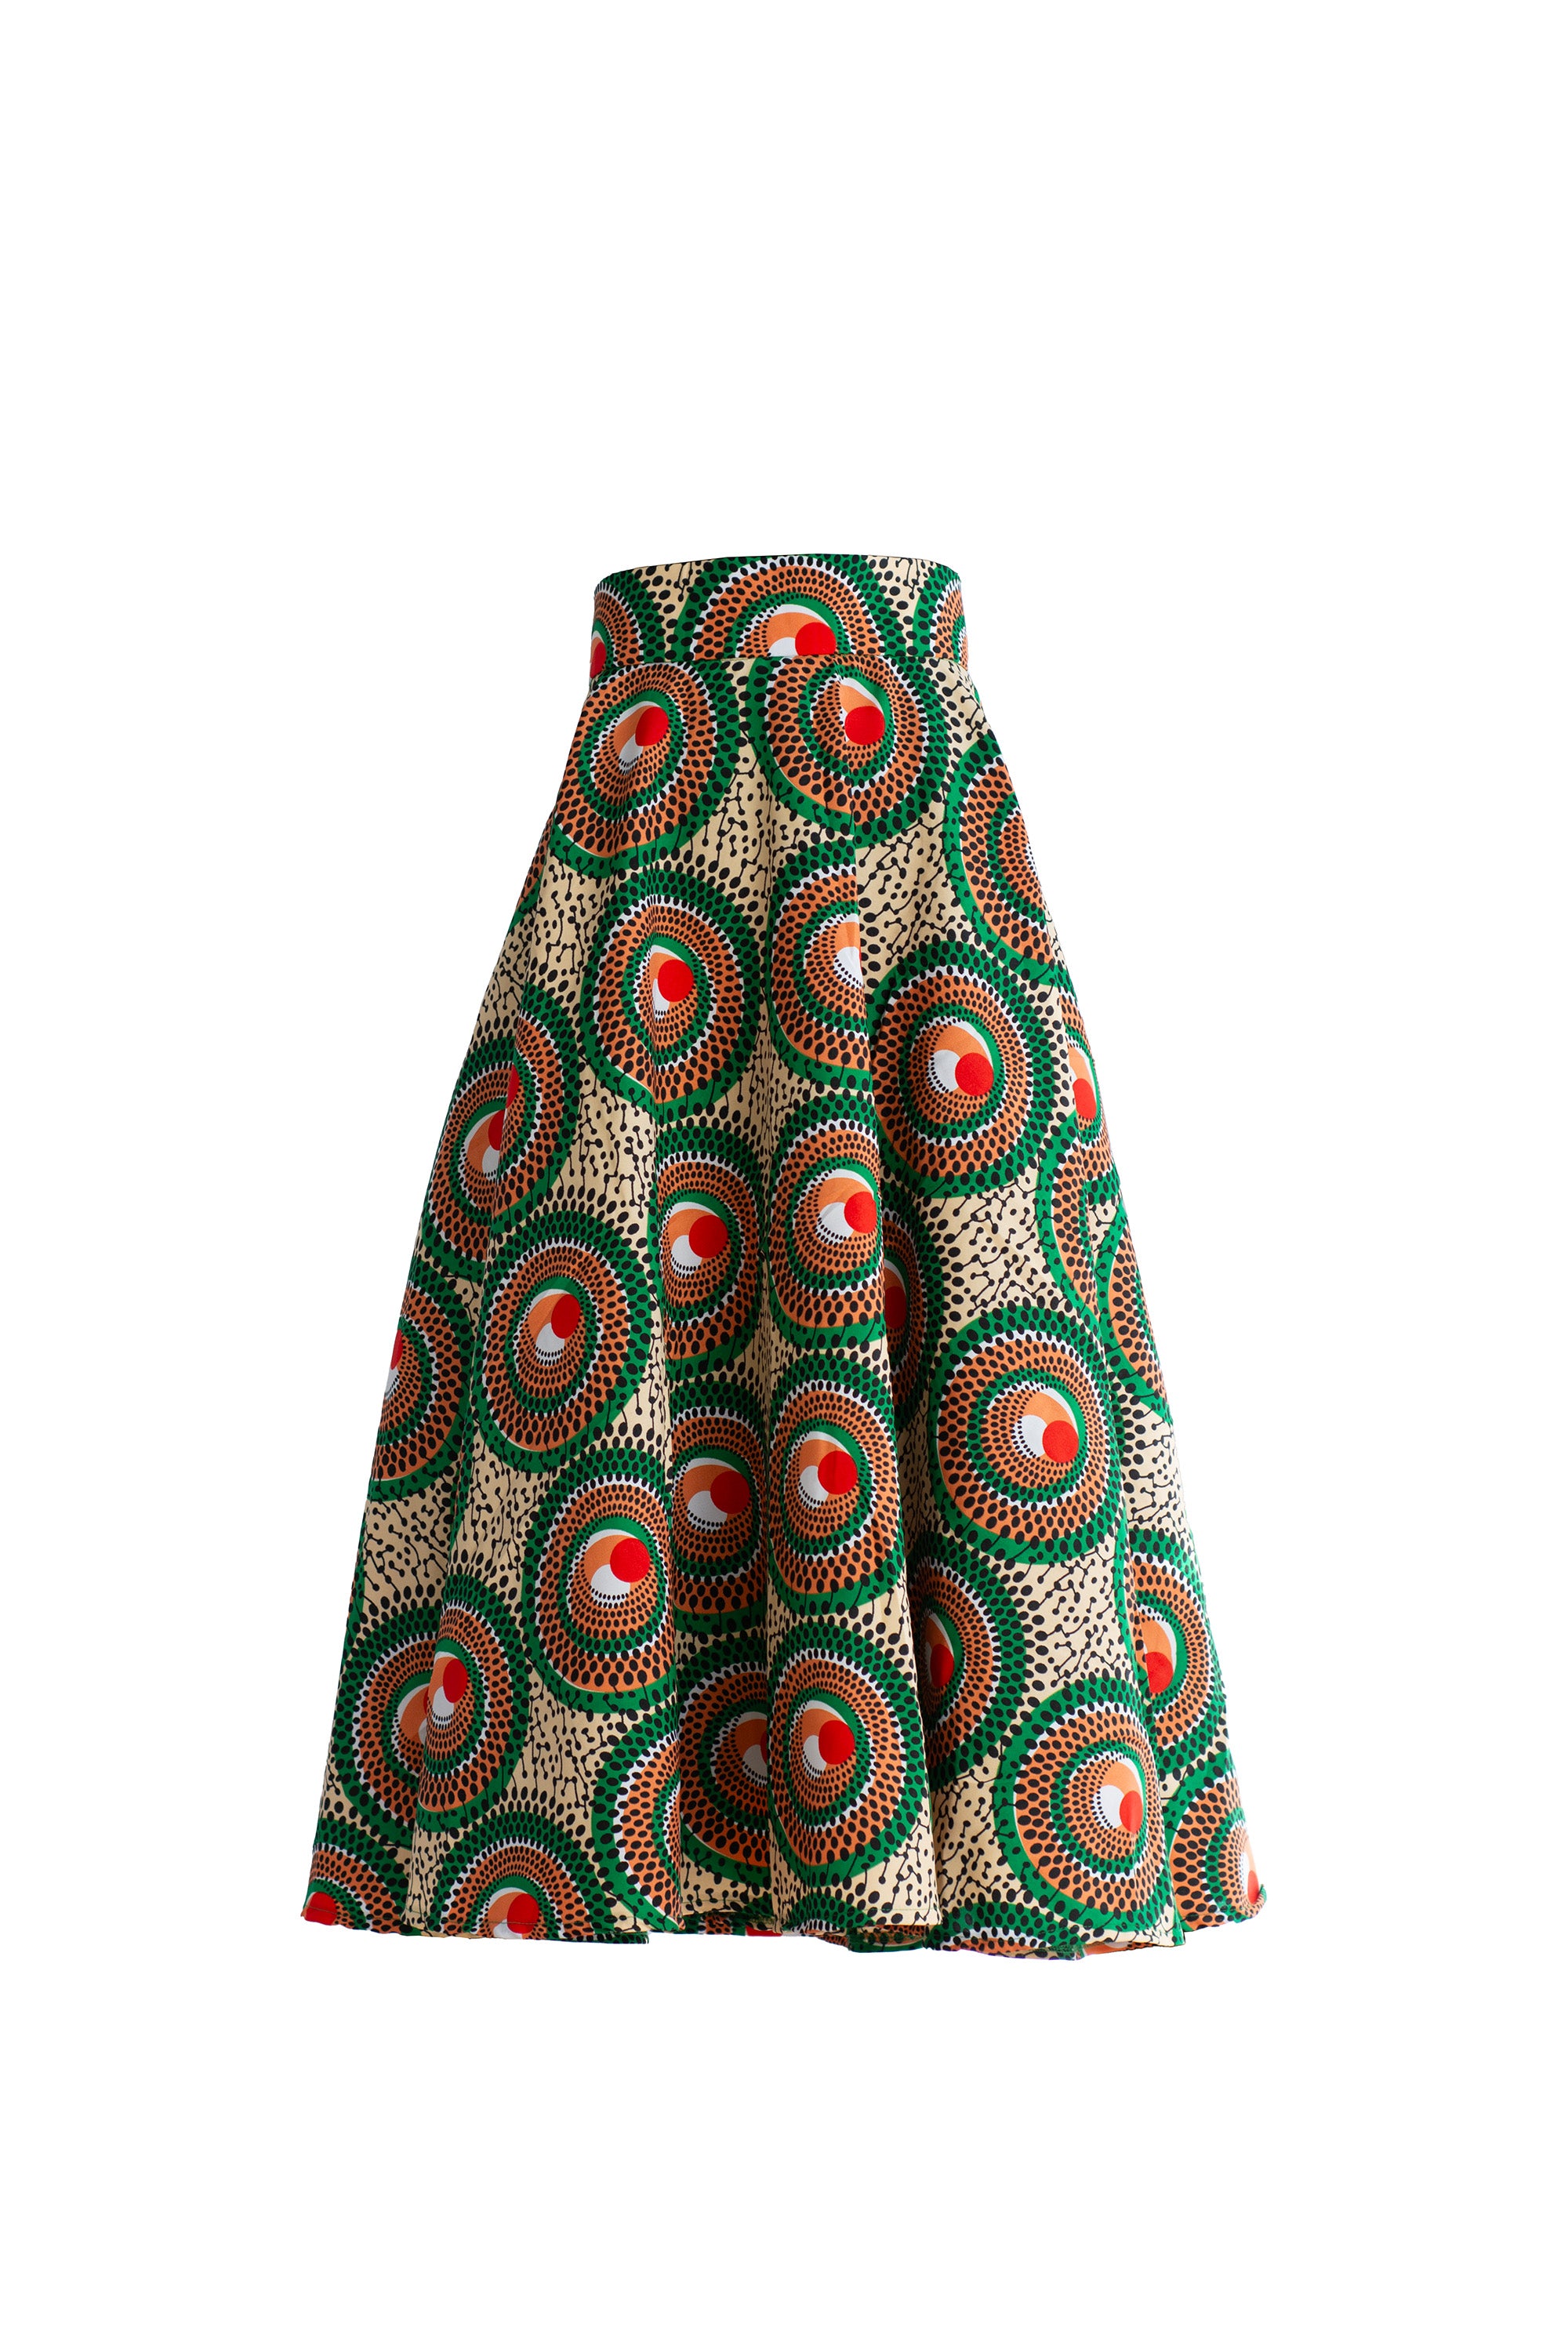 Ankara Long Skirts